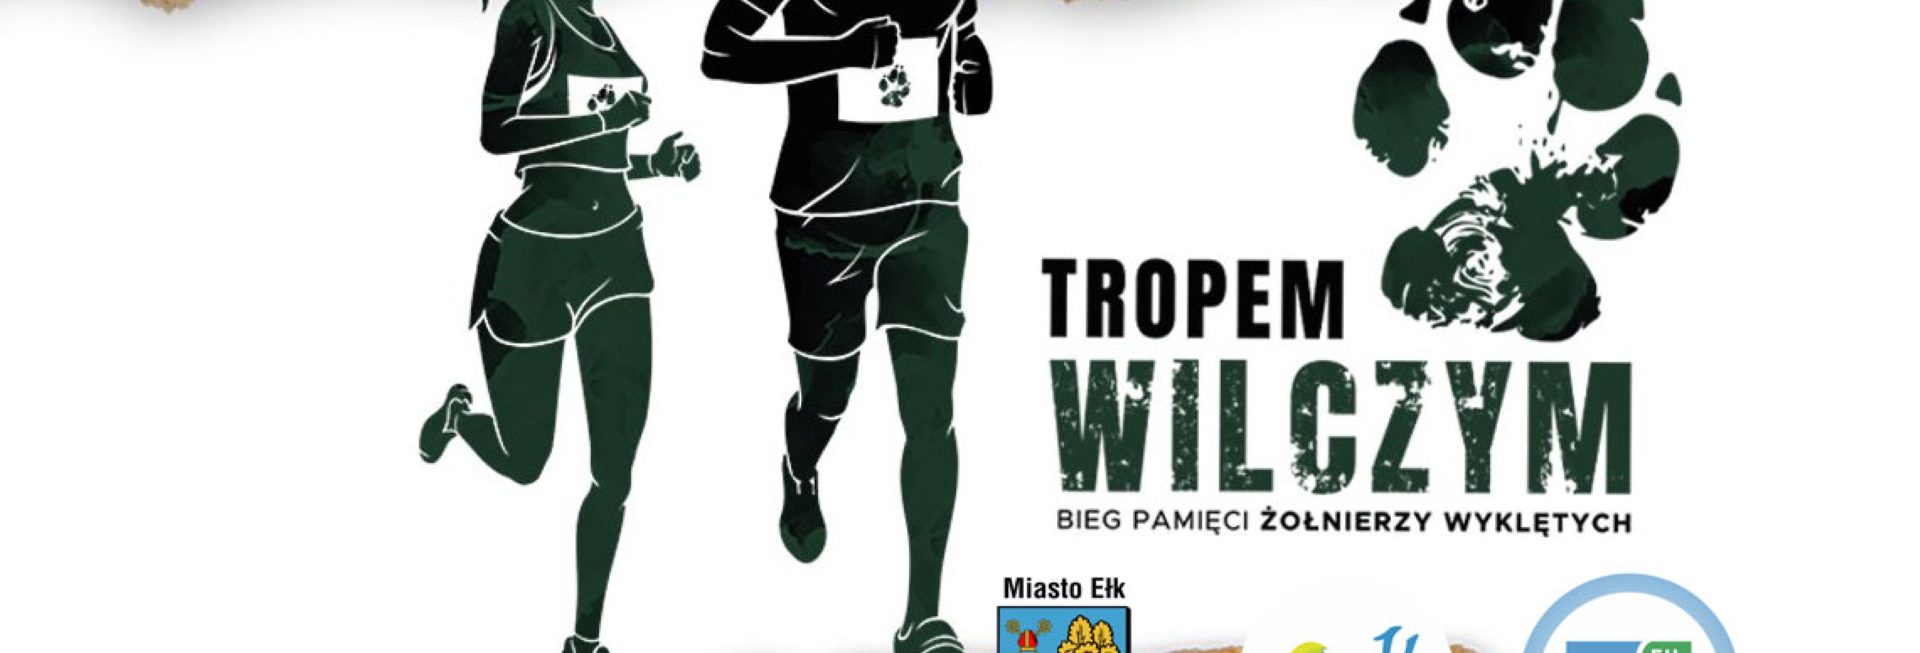 Plakat graficzny zapraszający do Ełku na 10.edycję Biegu Pamięci Żołnierzy Wyklętych "Tropem Wilczym" Ełk 2022. 